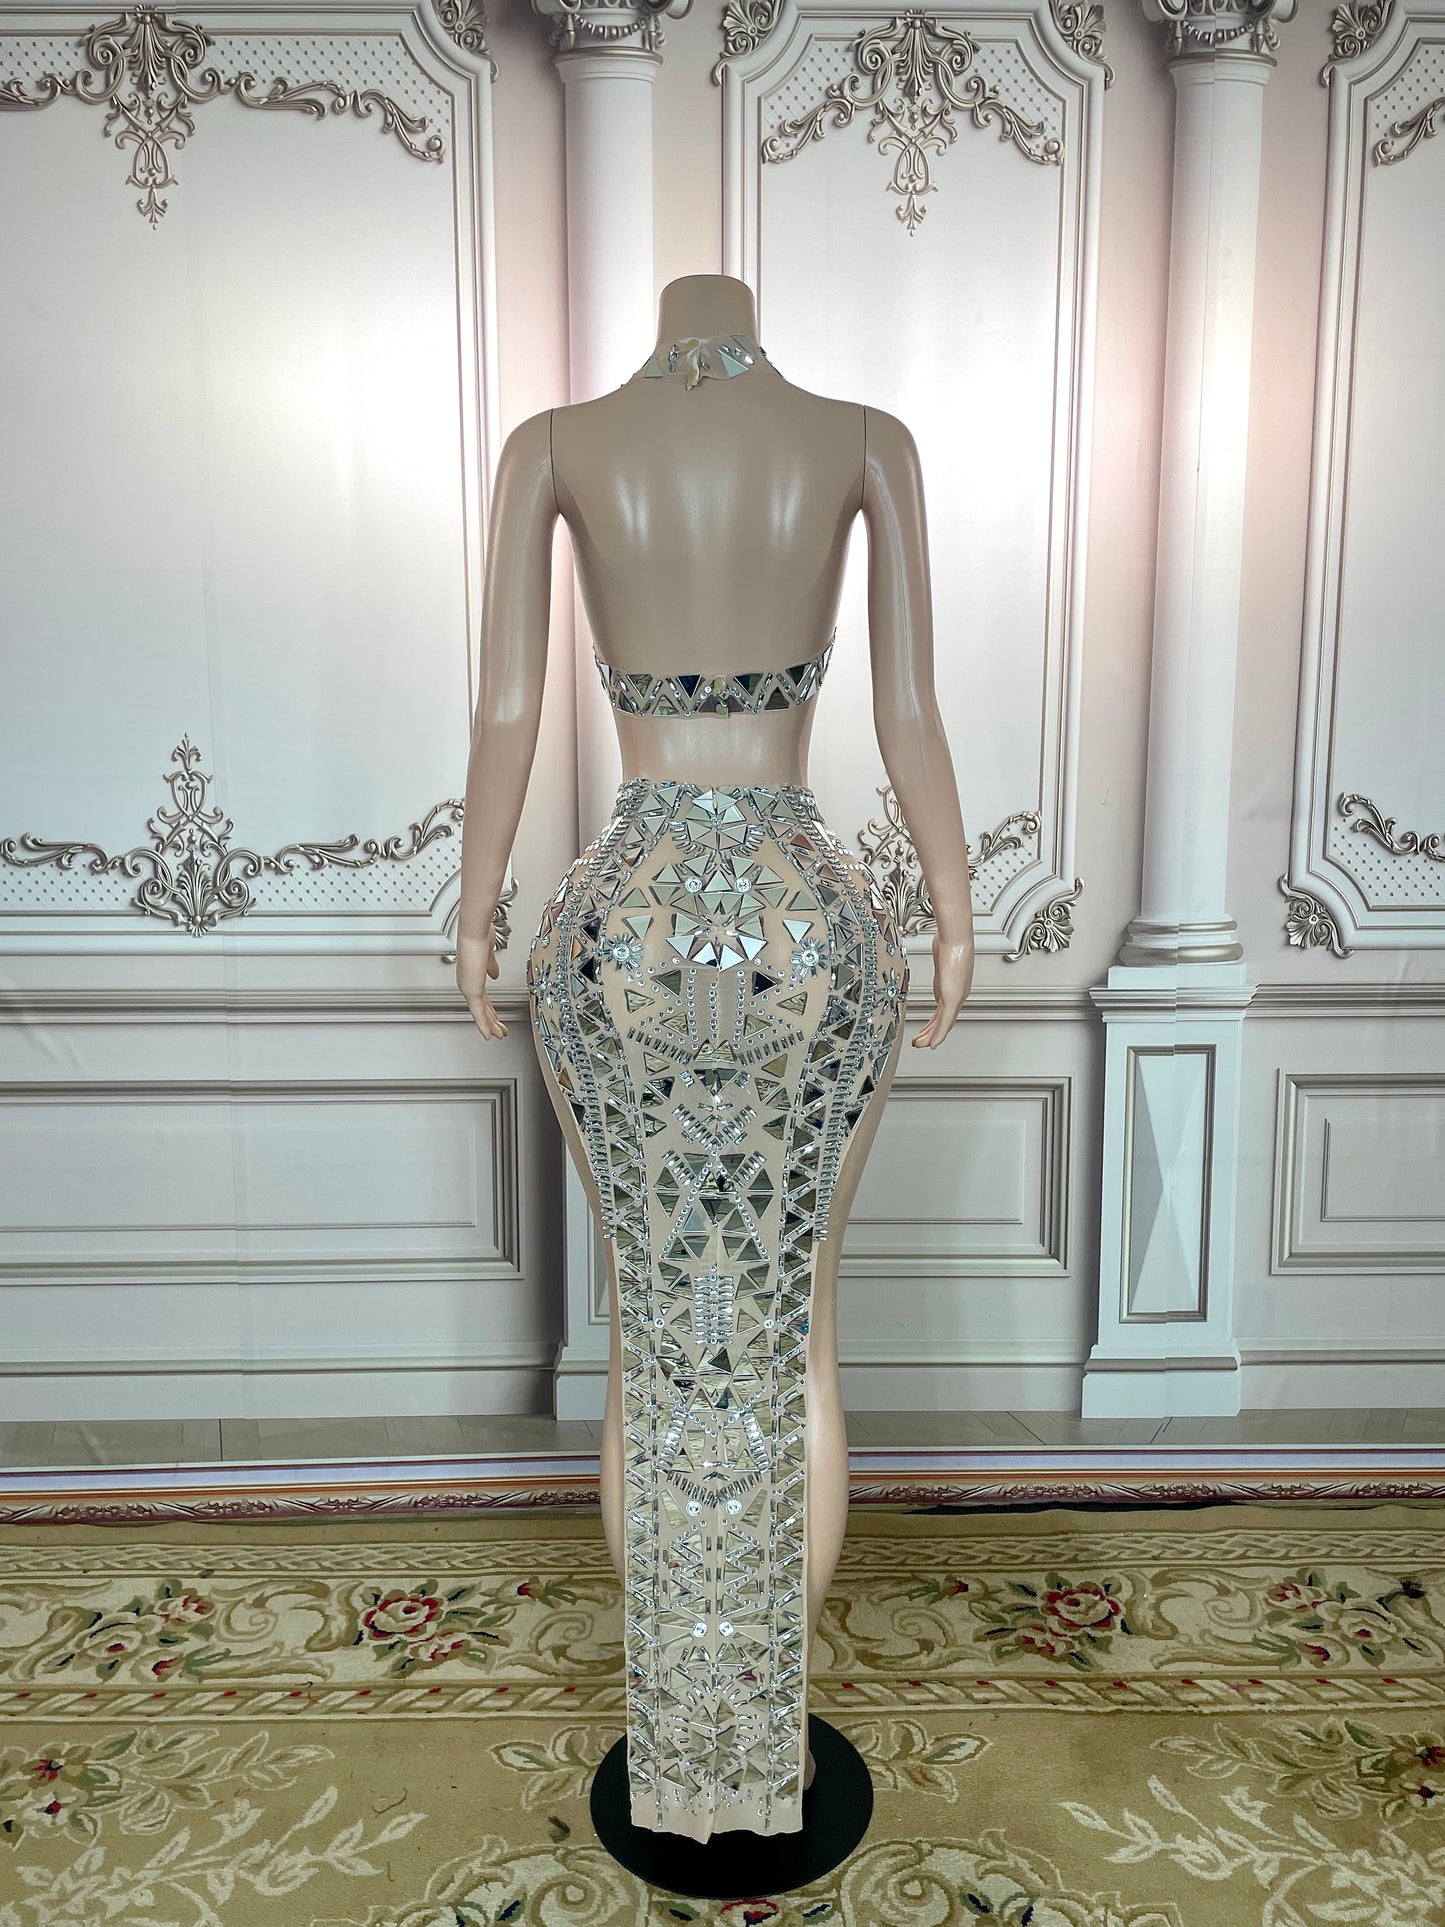 Stage Sparkly Silver Mirror Rhinestone Dress